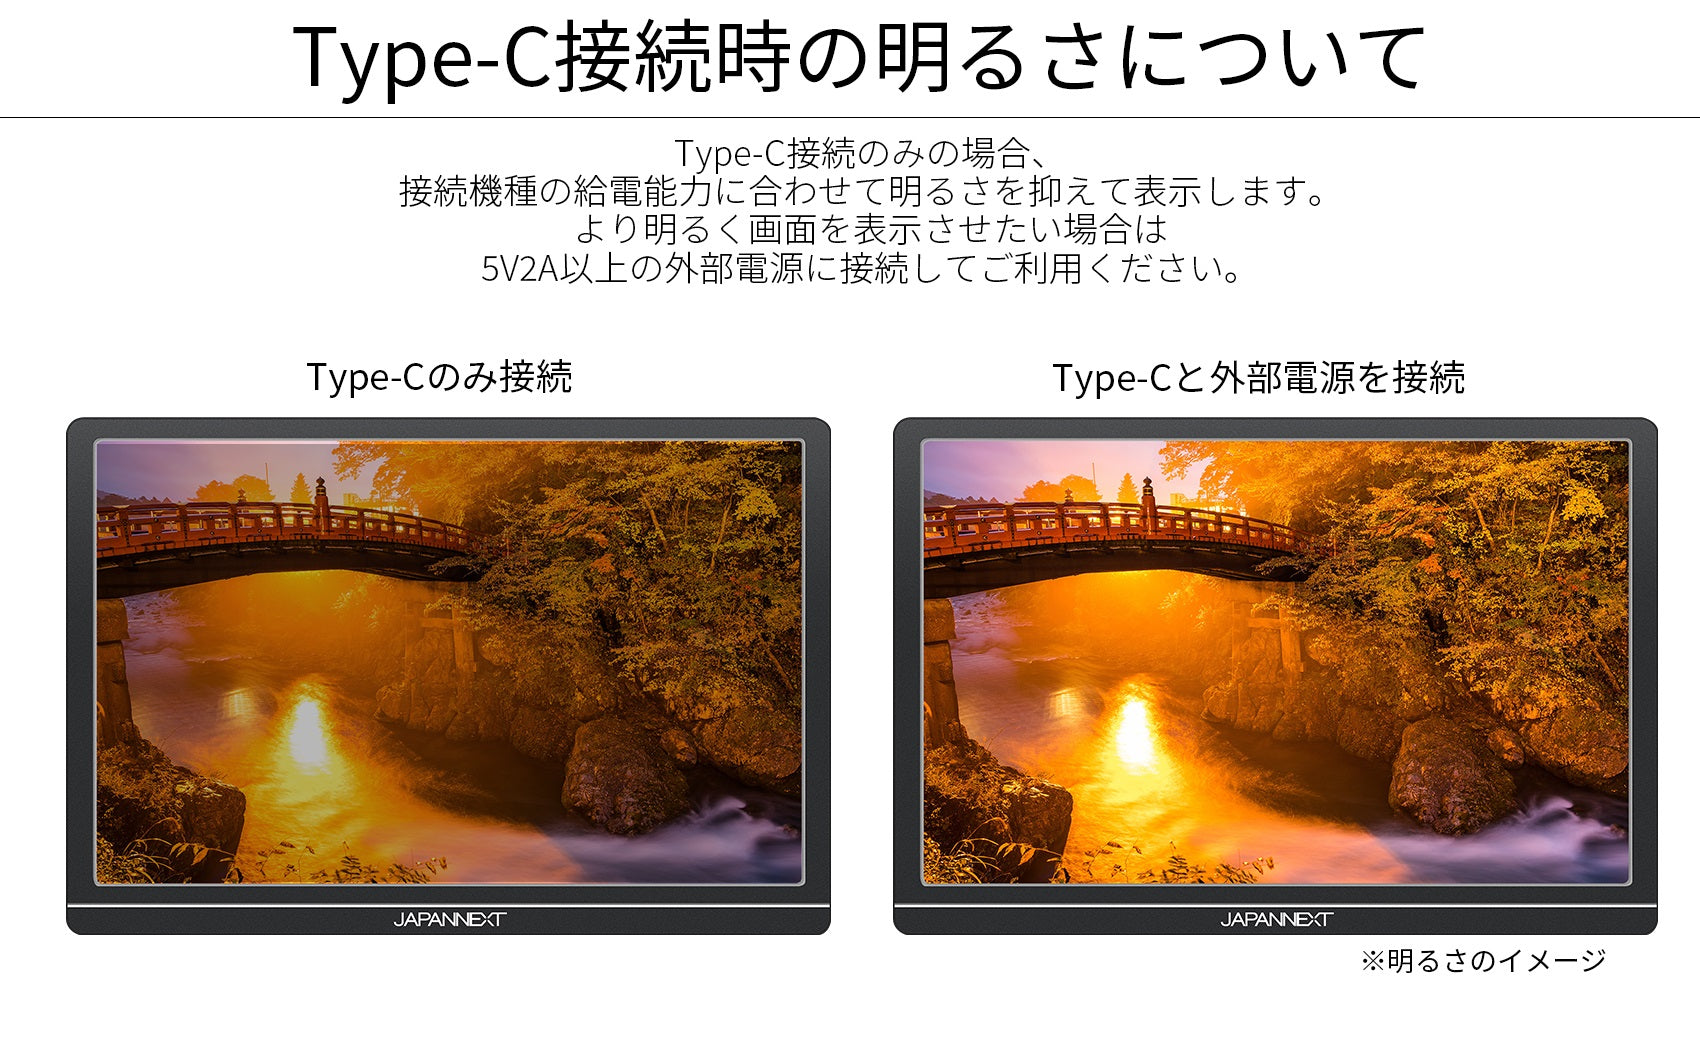 JAPANNEXT JN-MD-IPS1012HDR 10.1インチ 1920x1200解像度 モバイル 